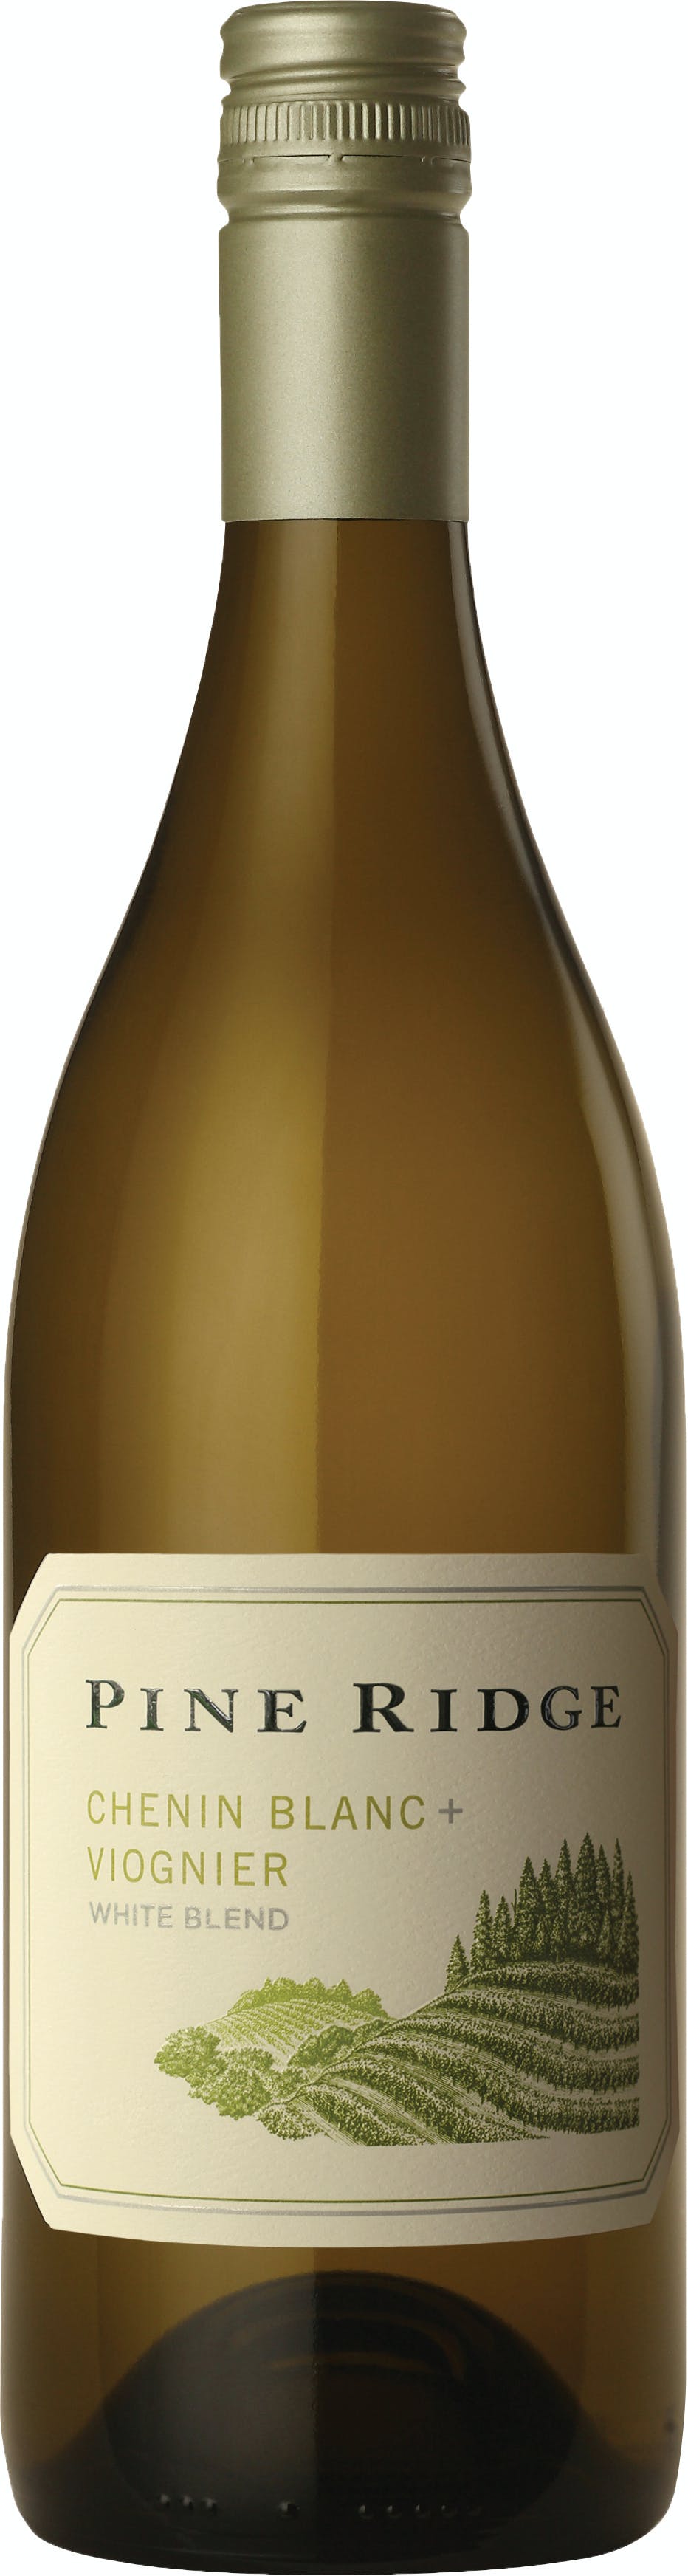 images/wine/WHITE WINE/Pine Ridge Chenin Blanc Viognier.jpg